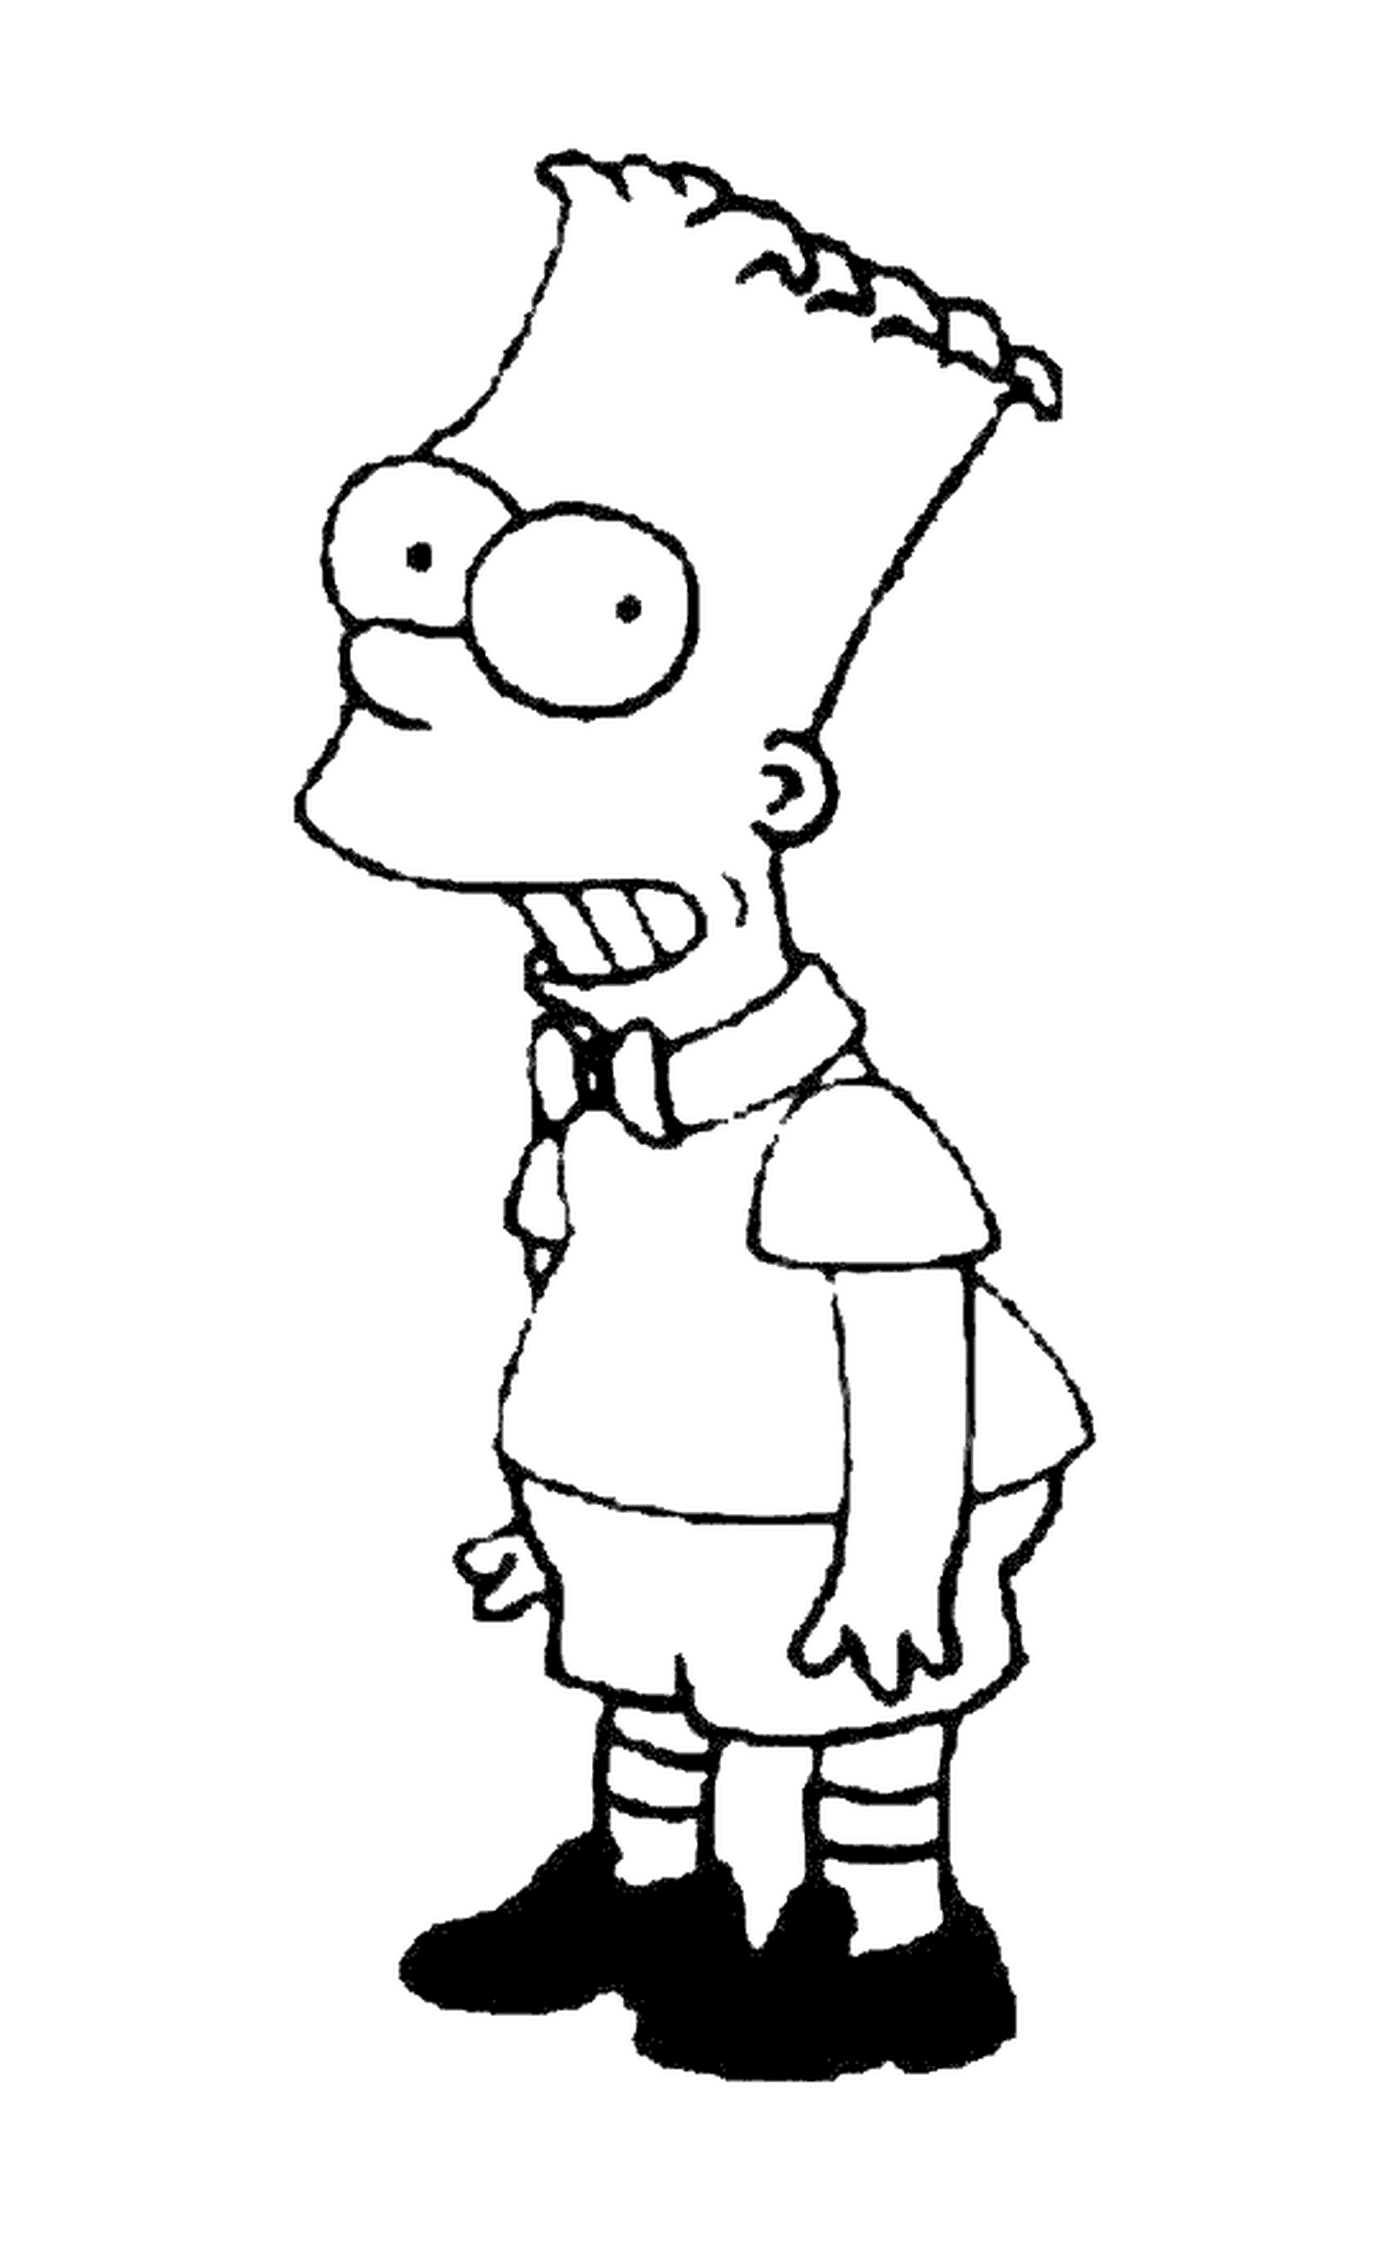   Bart en enfant modèle, personnage des Simpson 